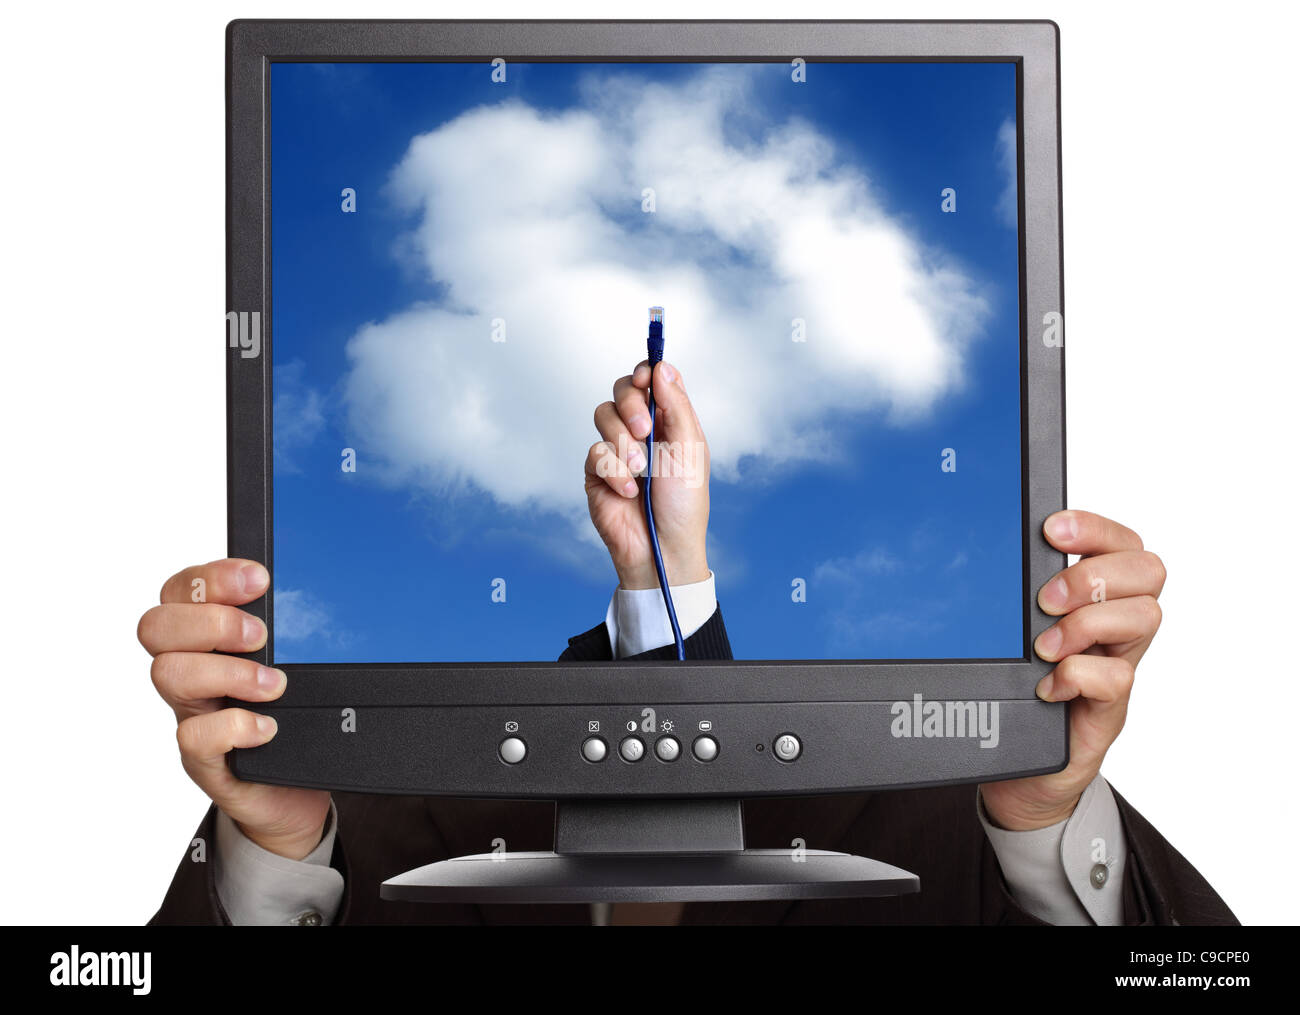 Le concept de cloud computing Banque D'Images